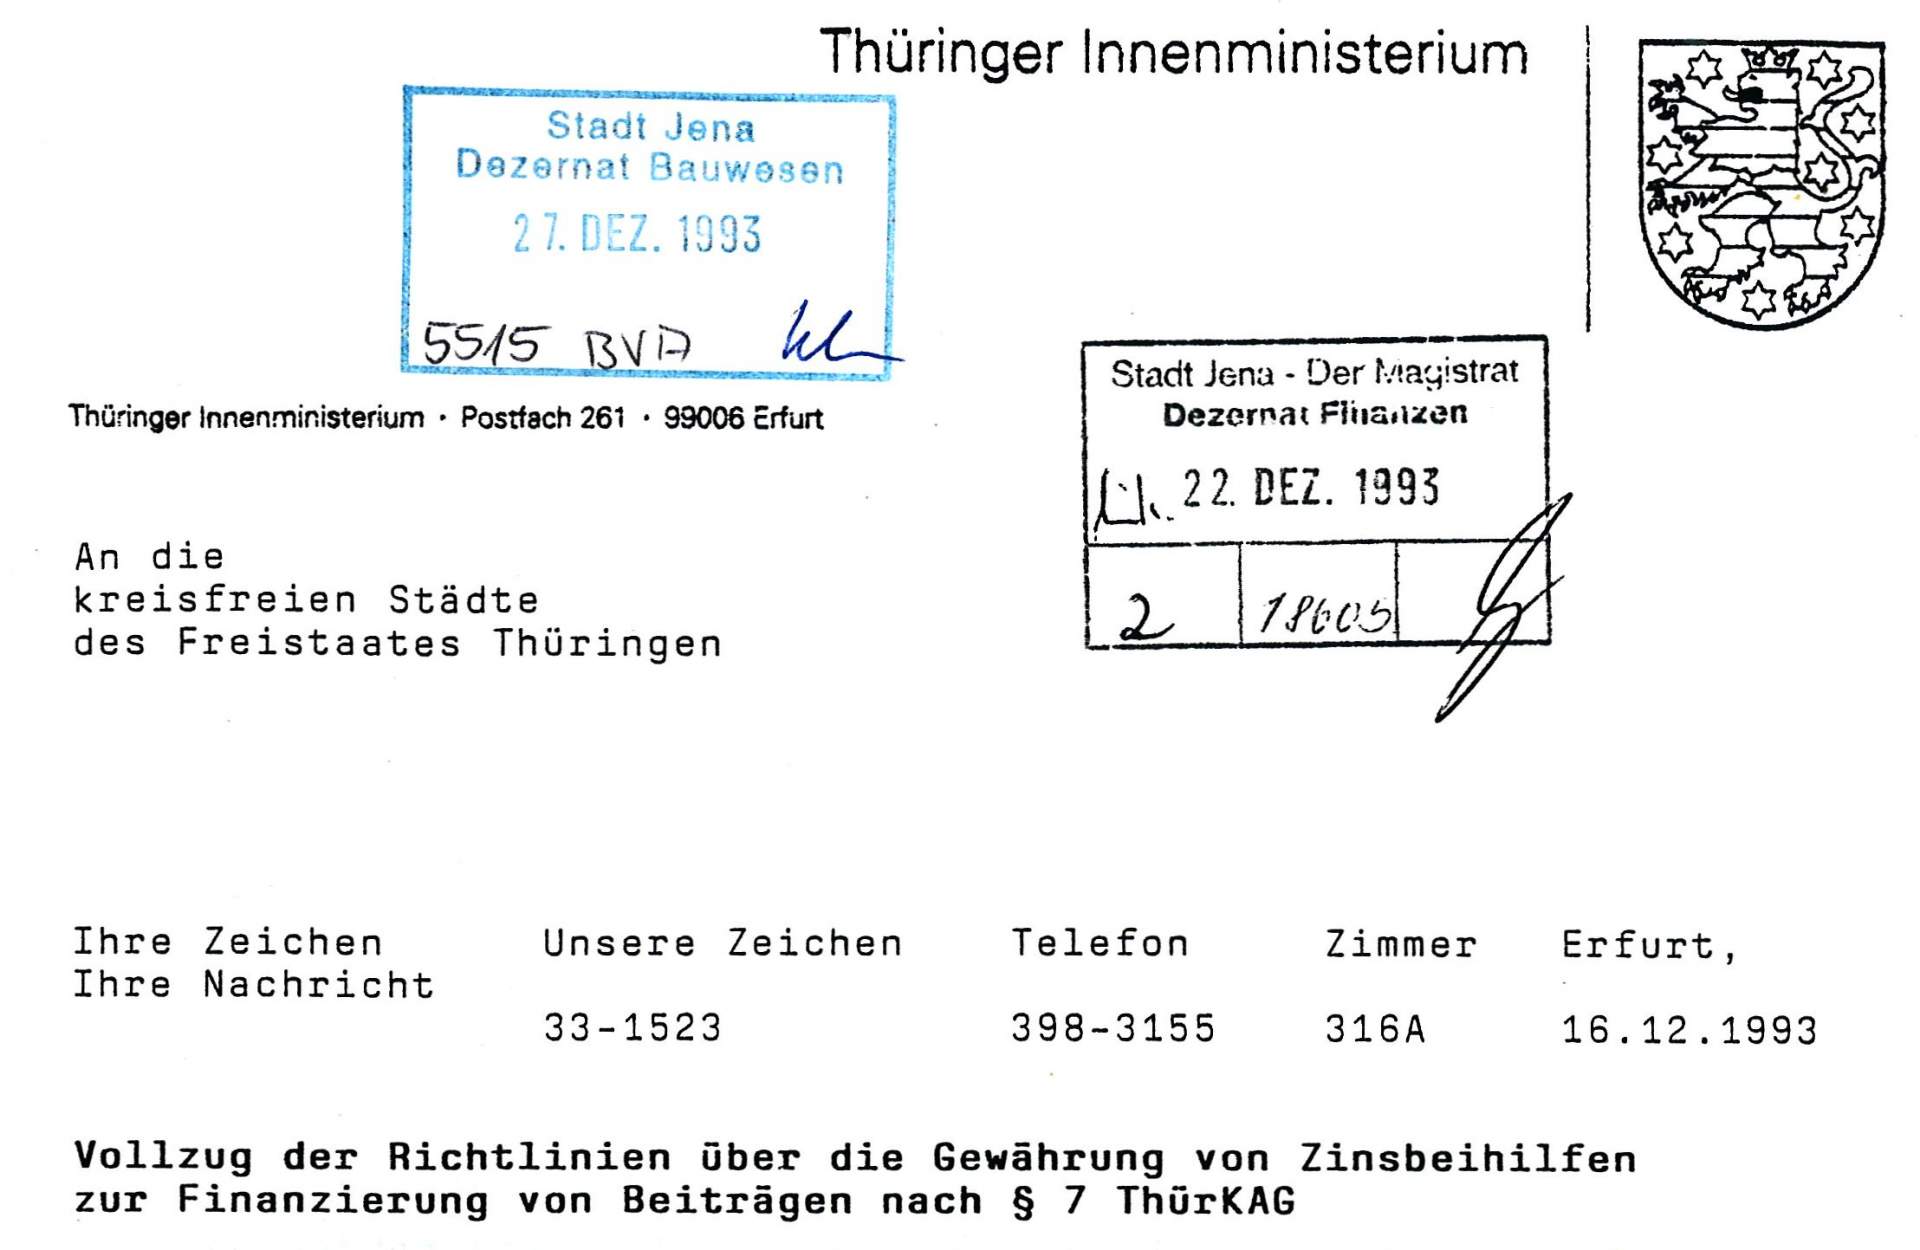 Anschreiben des Thüringer Innenministeriums vom Dezember 1993 zum Vollzug der Zinsbeihilfen. - Teaser © KSJ